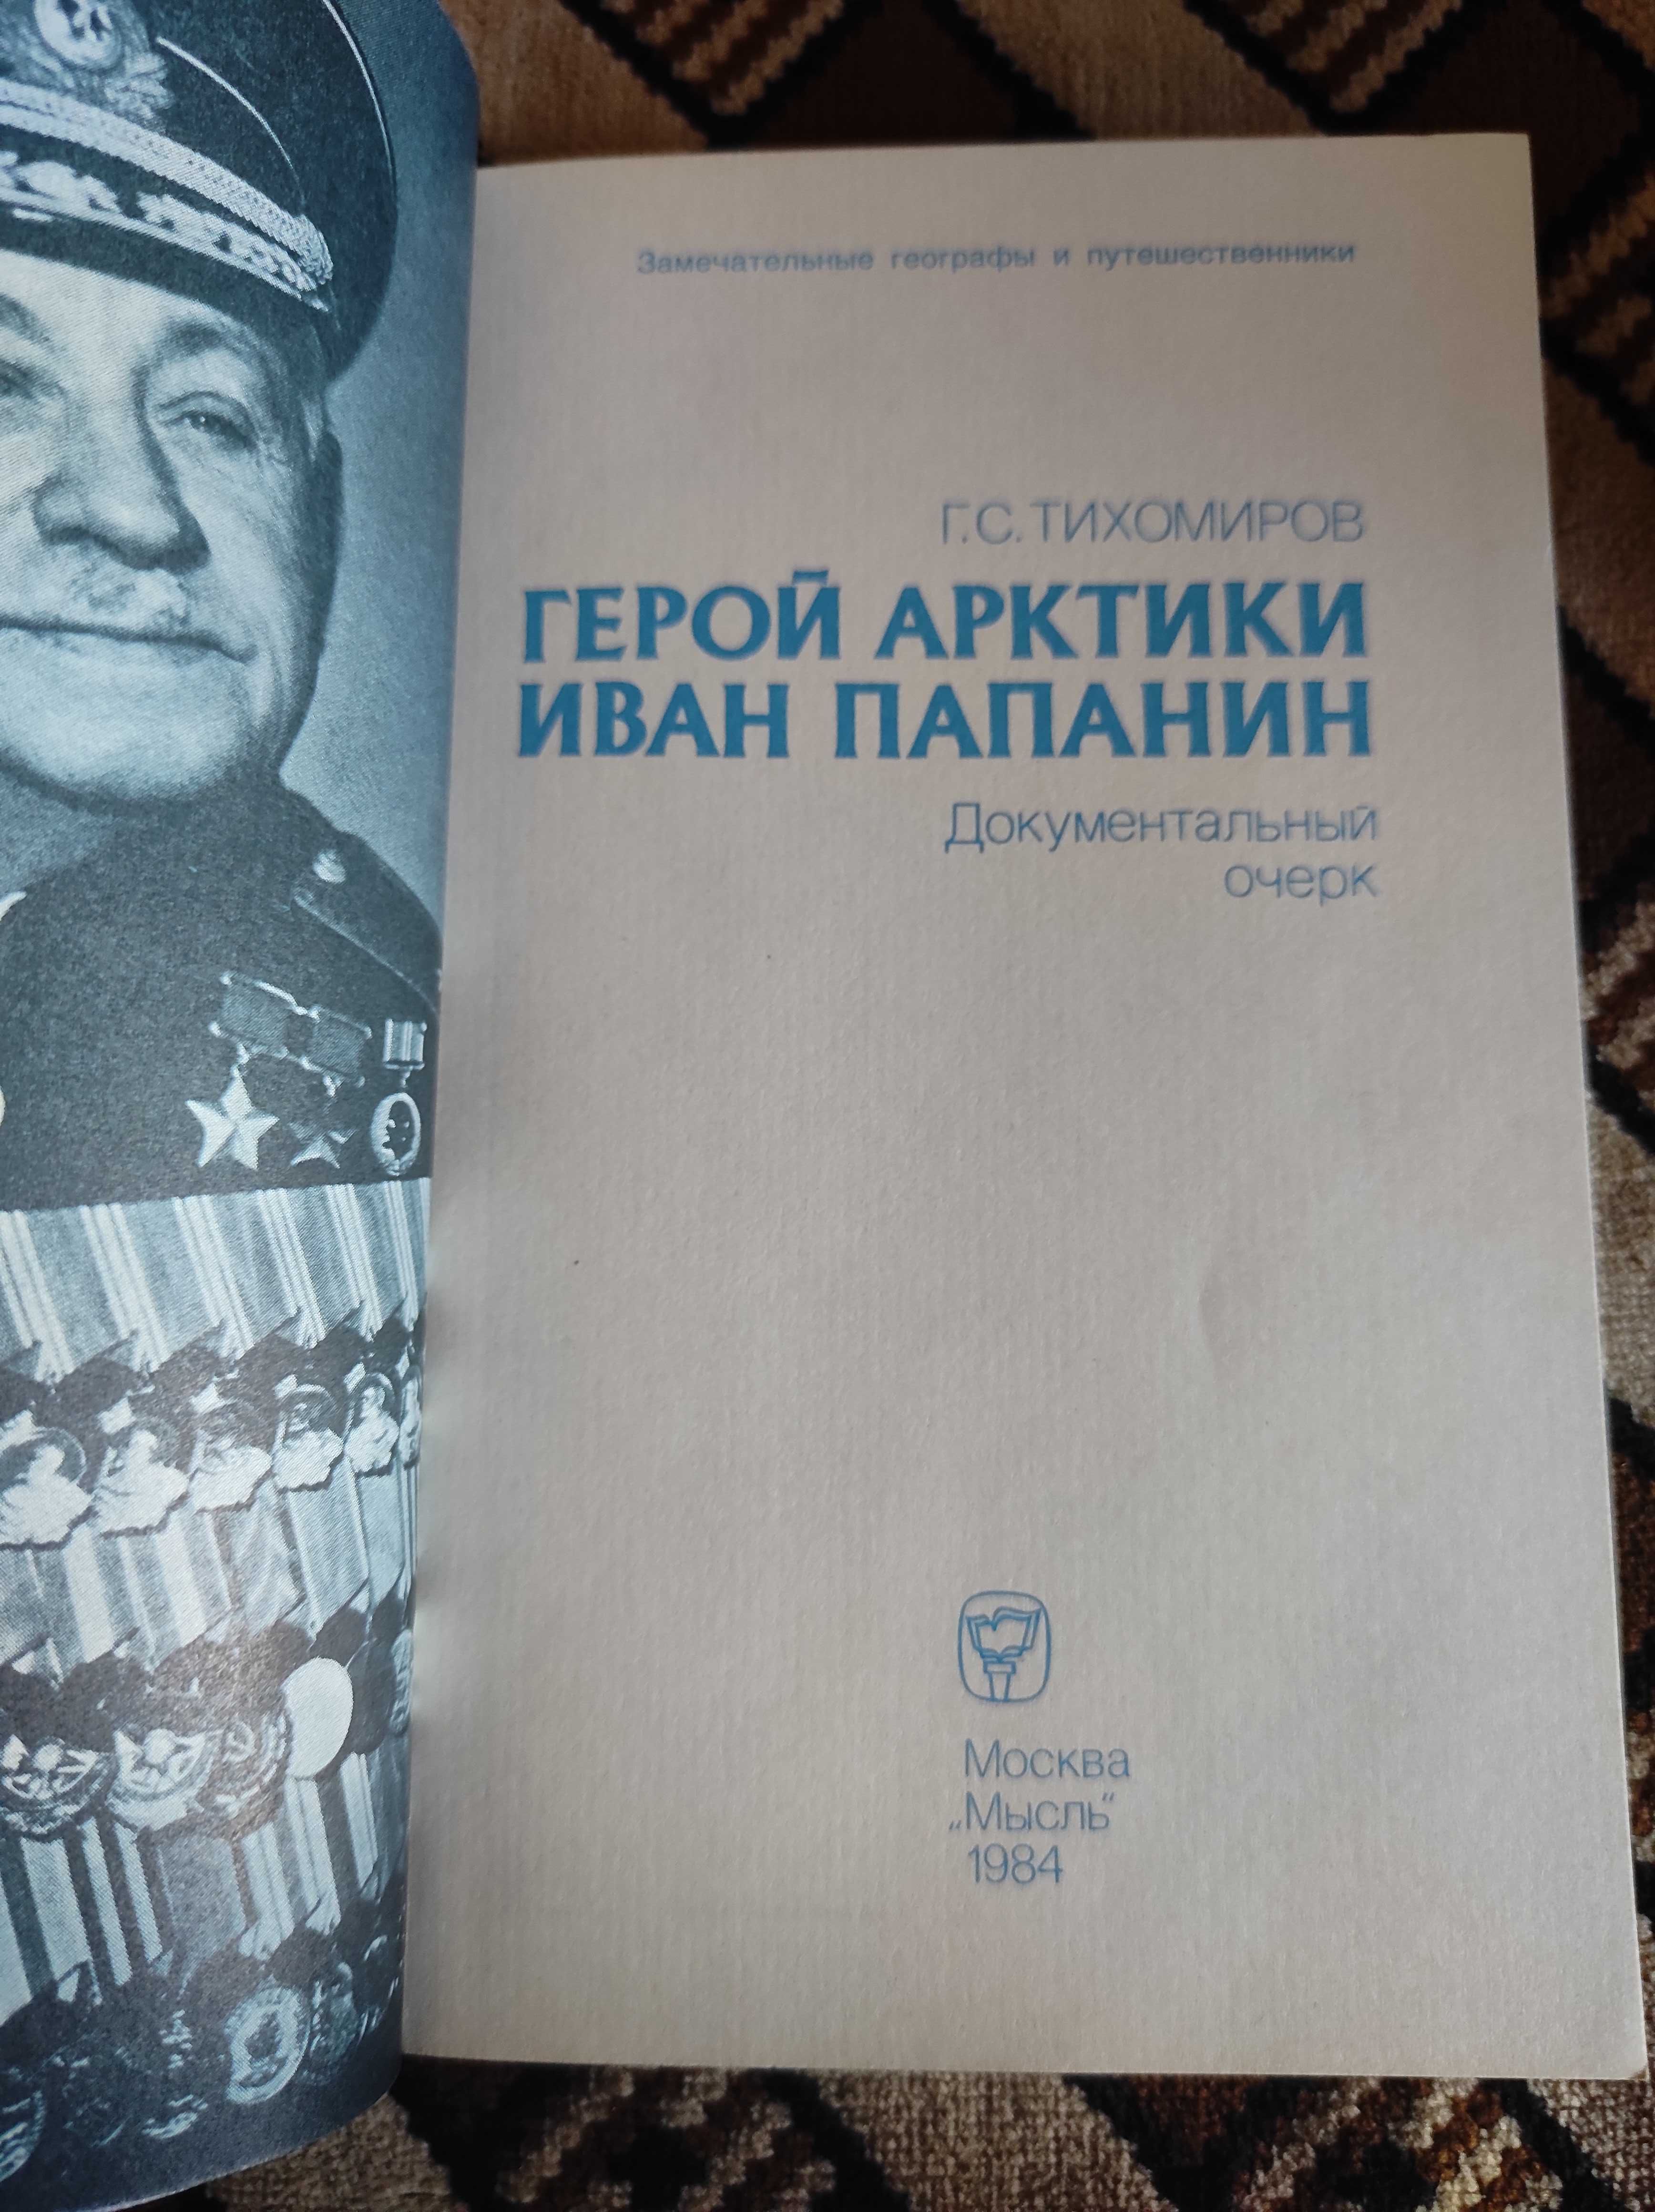 Тихомиров Герой Арктики Иван Папанин 1984 Документальный очерк Книга